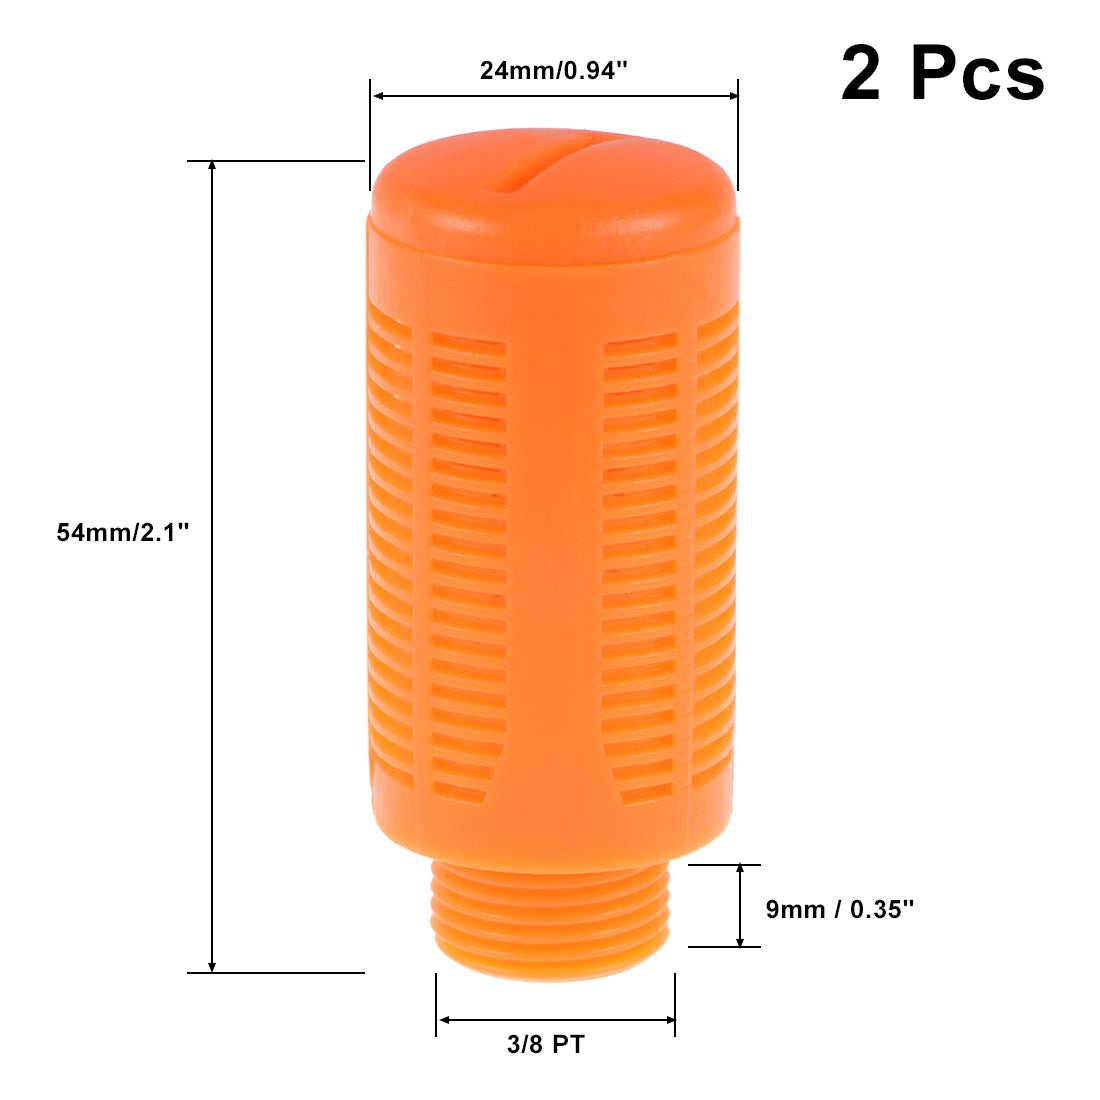 uxcell Uxcell Plastic Pneumatic Muffler Exhaust Air Line Silencer 3/8 PT Orange, 2pcs